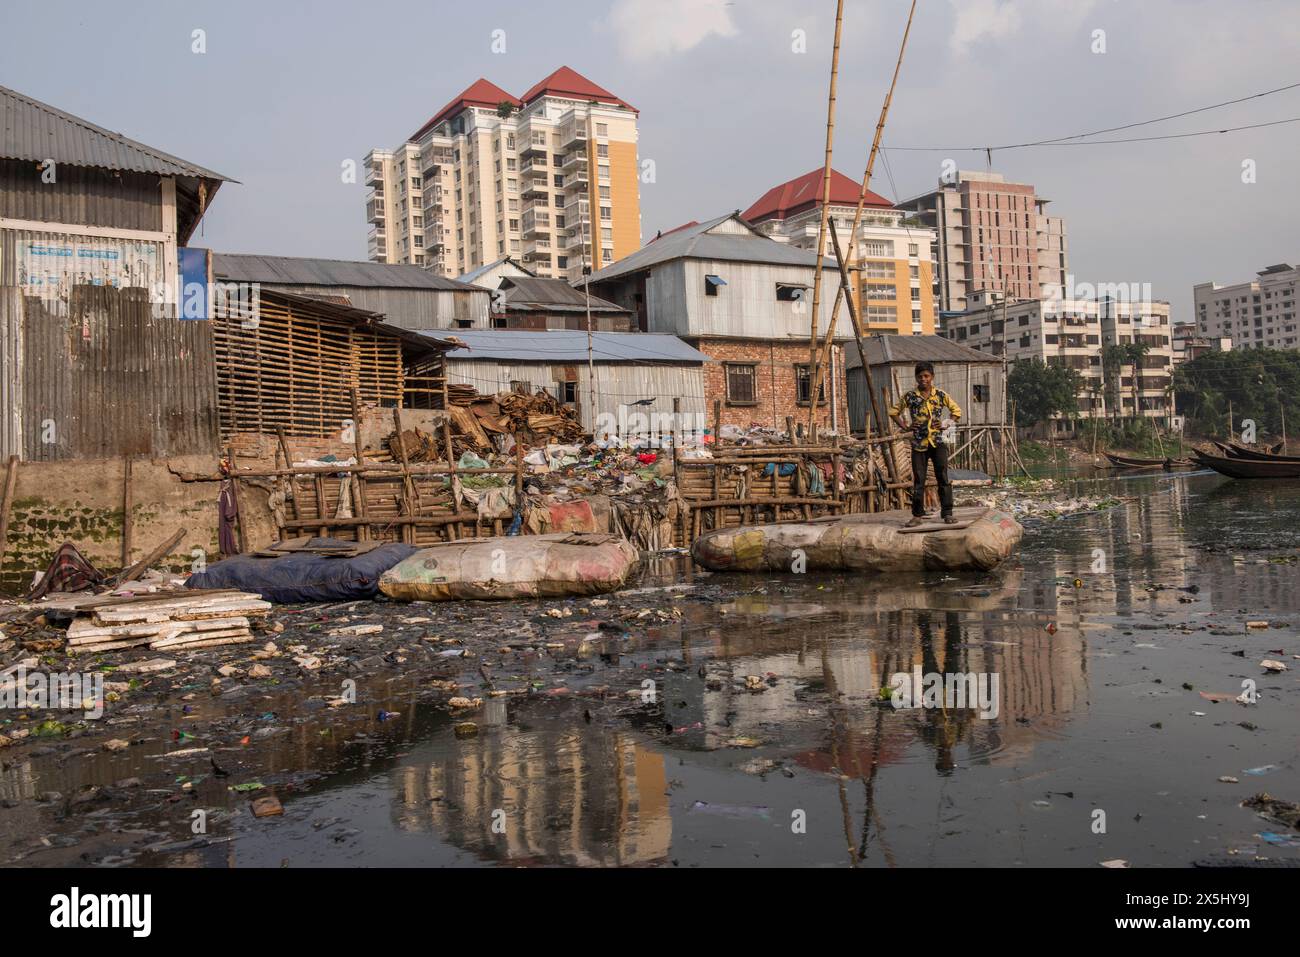 Bangladesch, Dhaka, Korail. Flöße aus Plastikflaschen bringen Passagiere über den Fluss. (Nur für redaktionelle Zwecke) Stockfoto